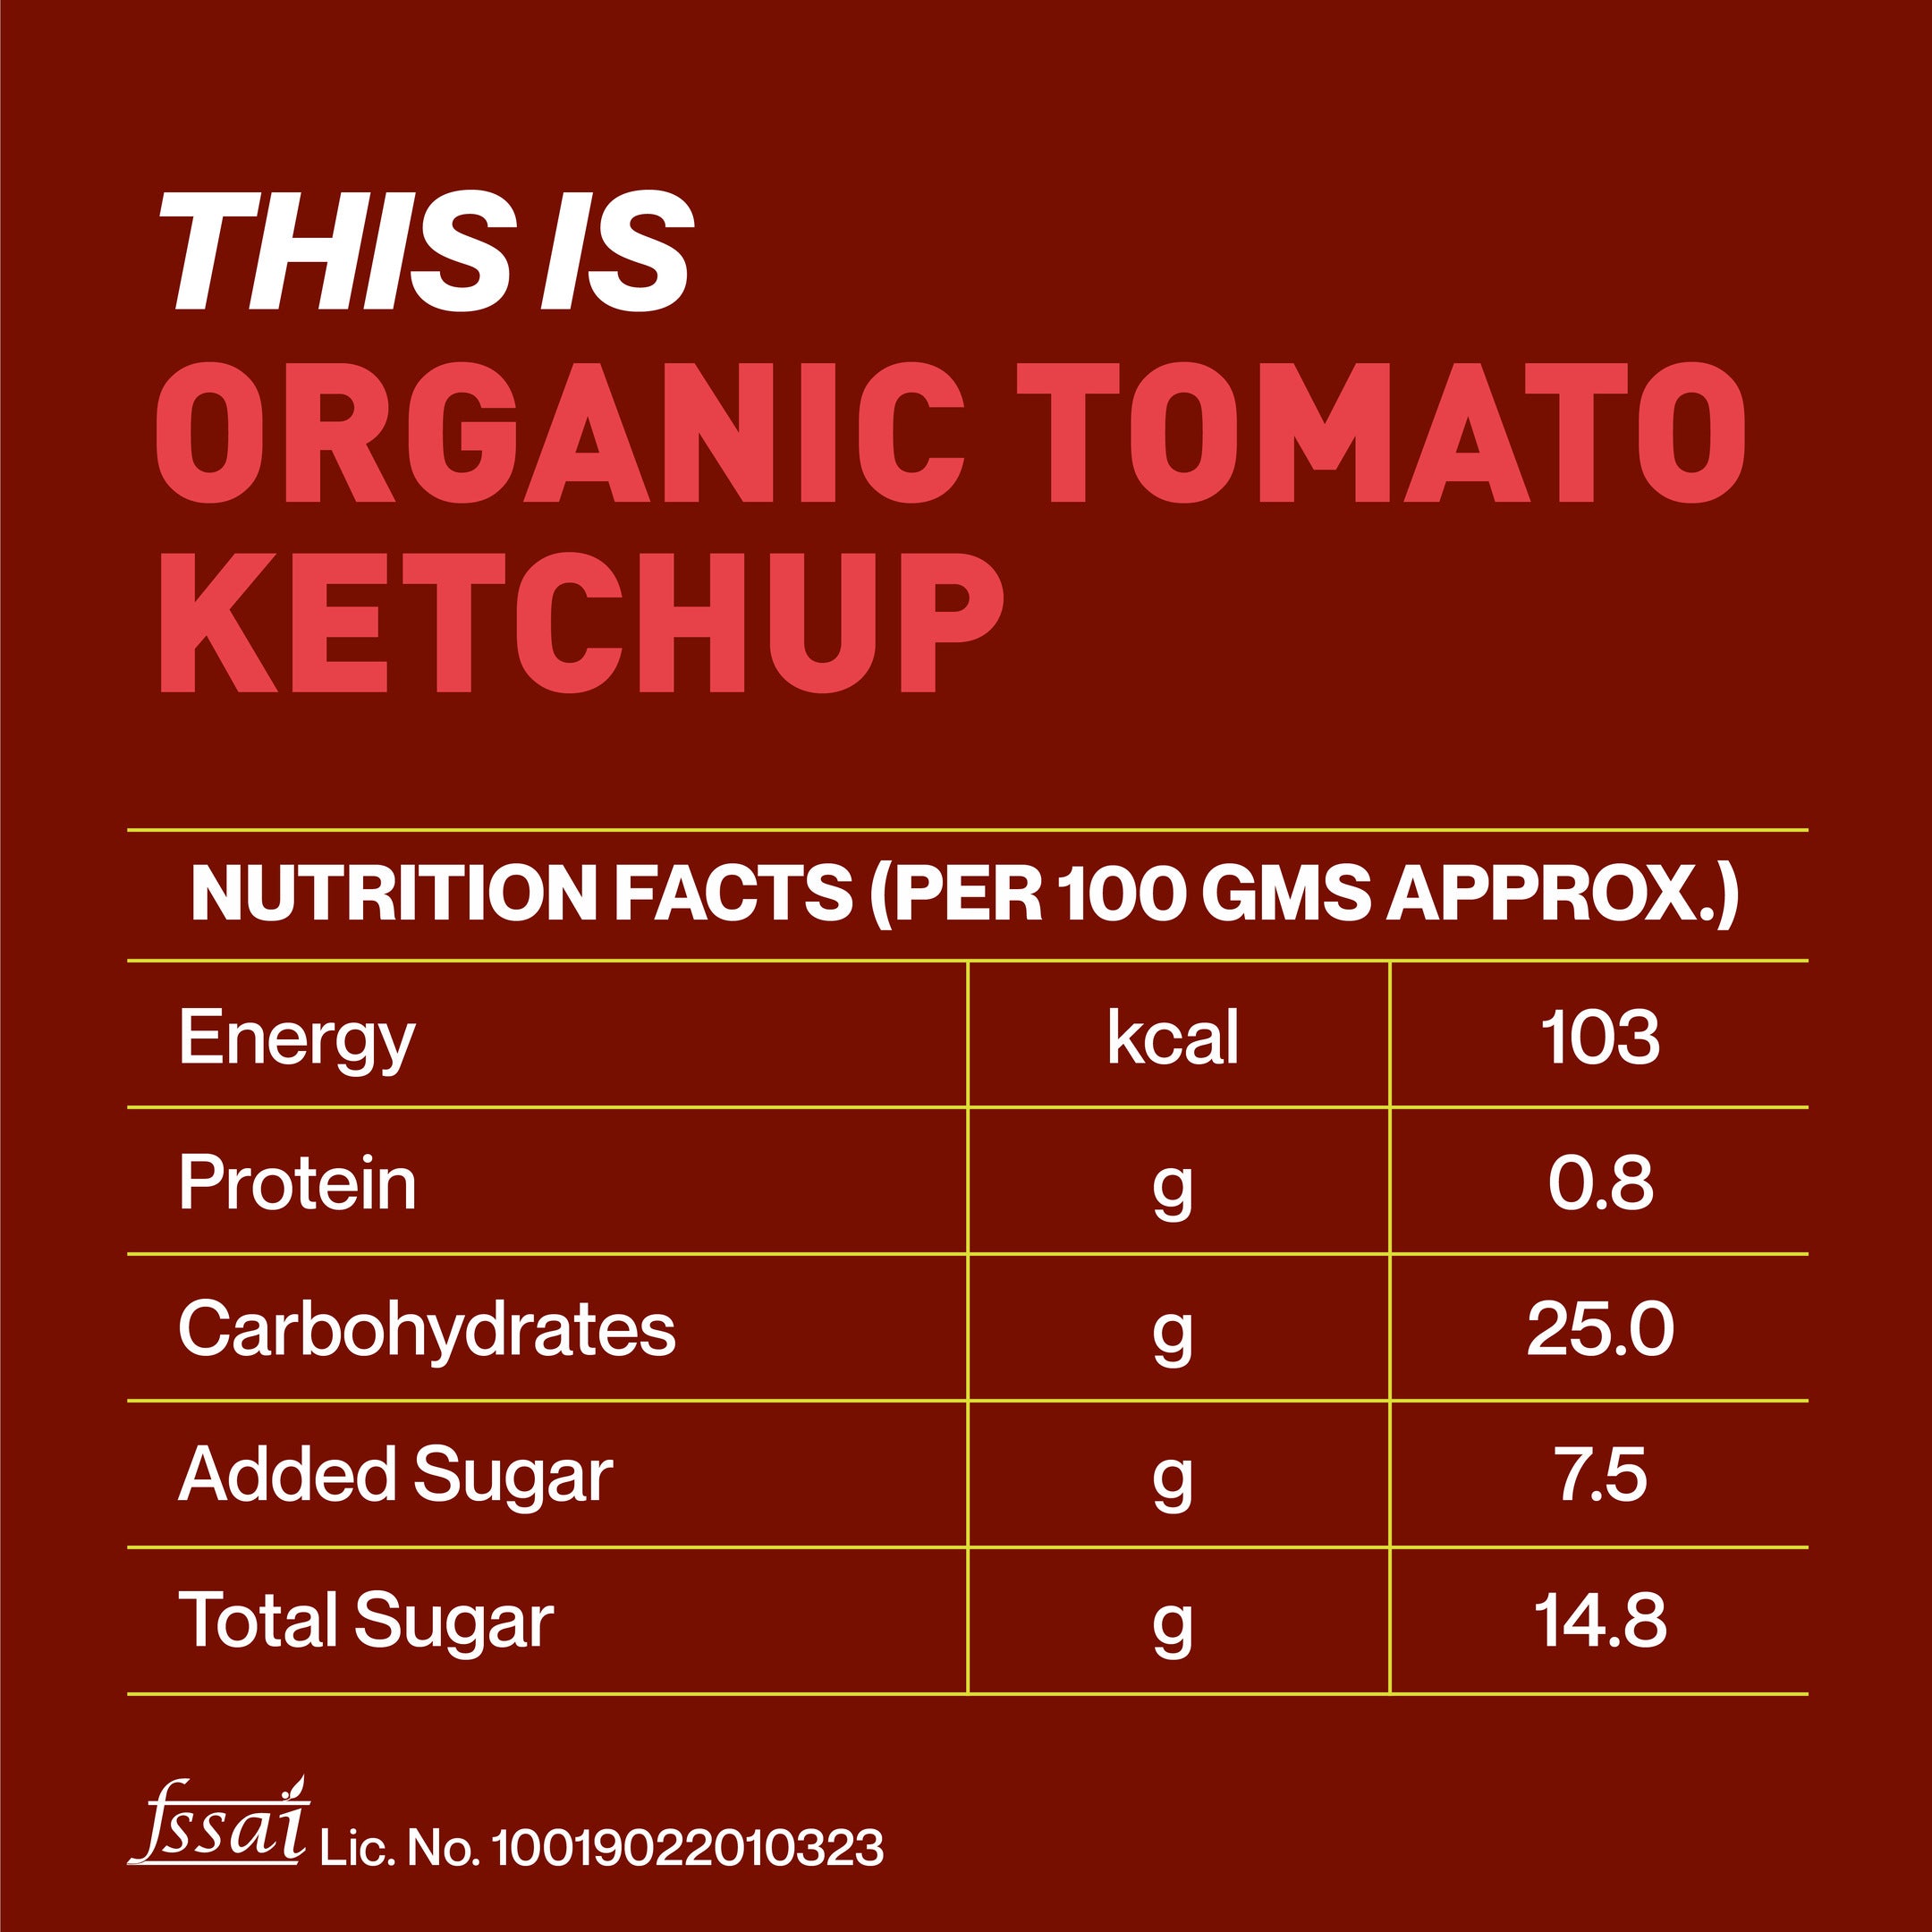 Zama Organics Organic Tomato Ketchup 300g